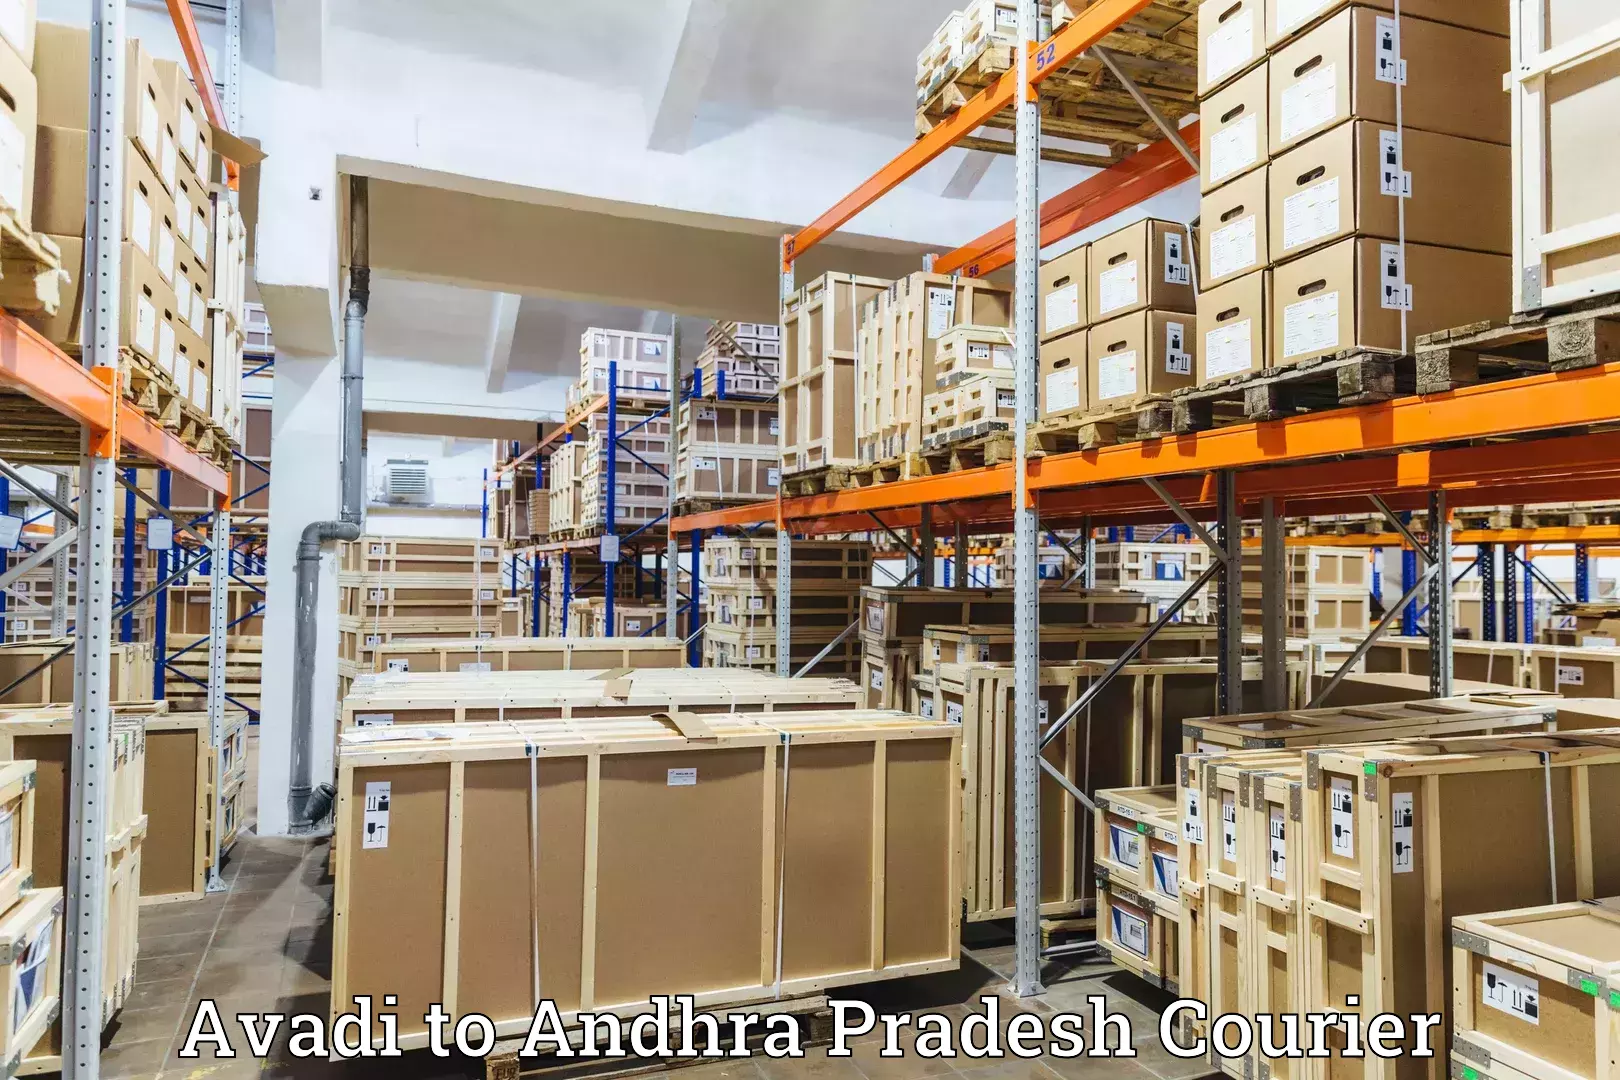 Online package tracking in Avadi to Bheemunipatnam